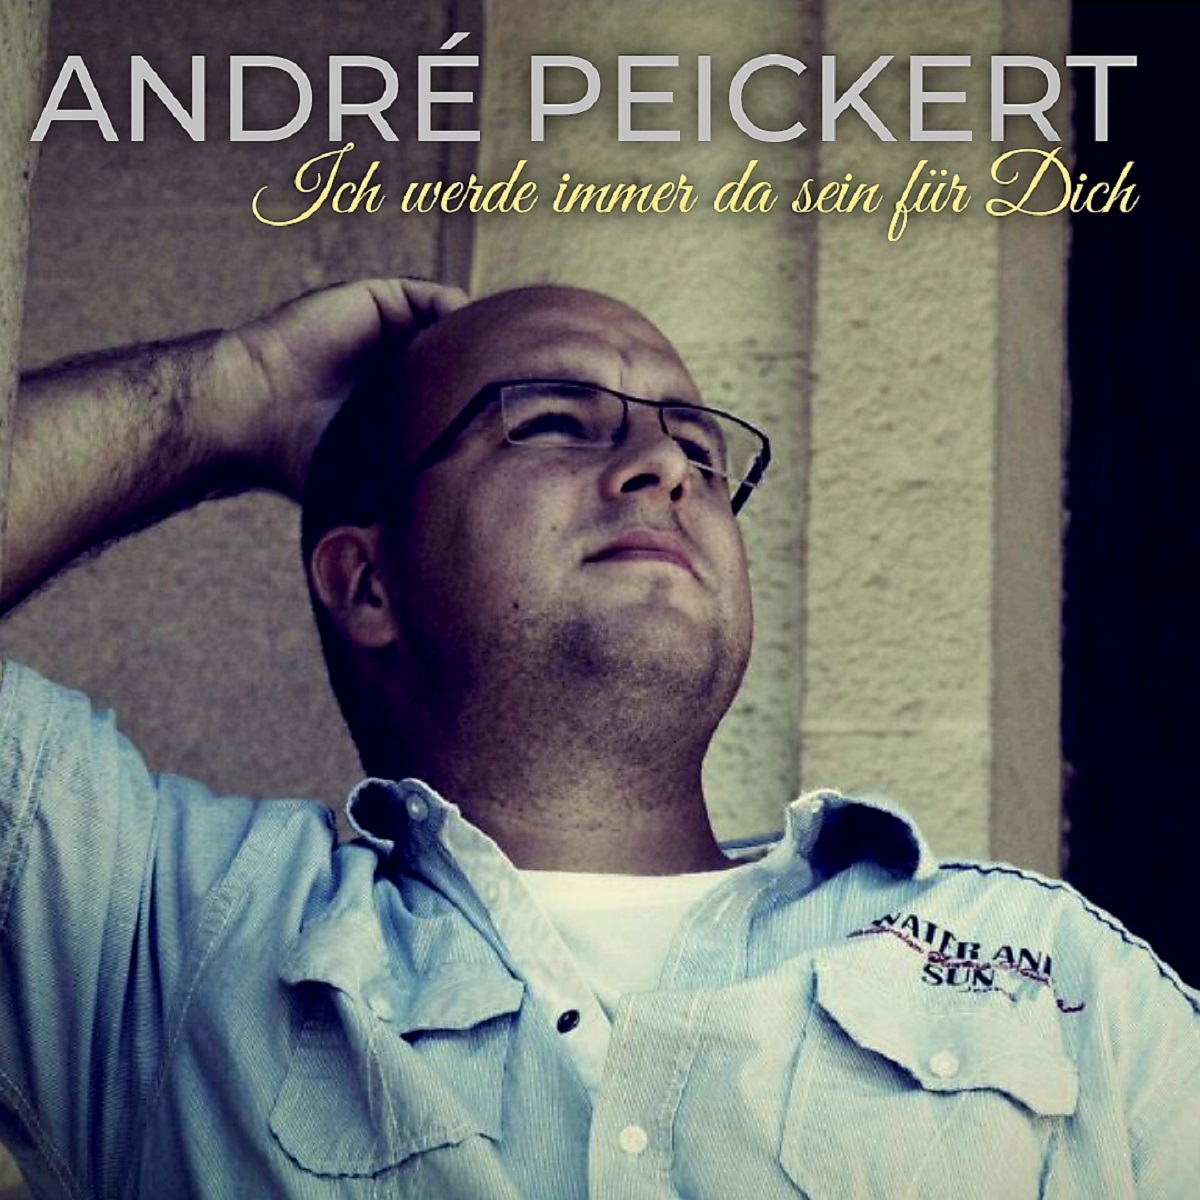 Andre Peickert - Ich werde immer da sein fr Dich - cover.jpg